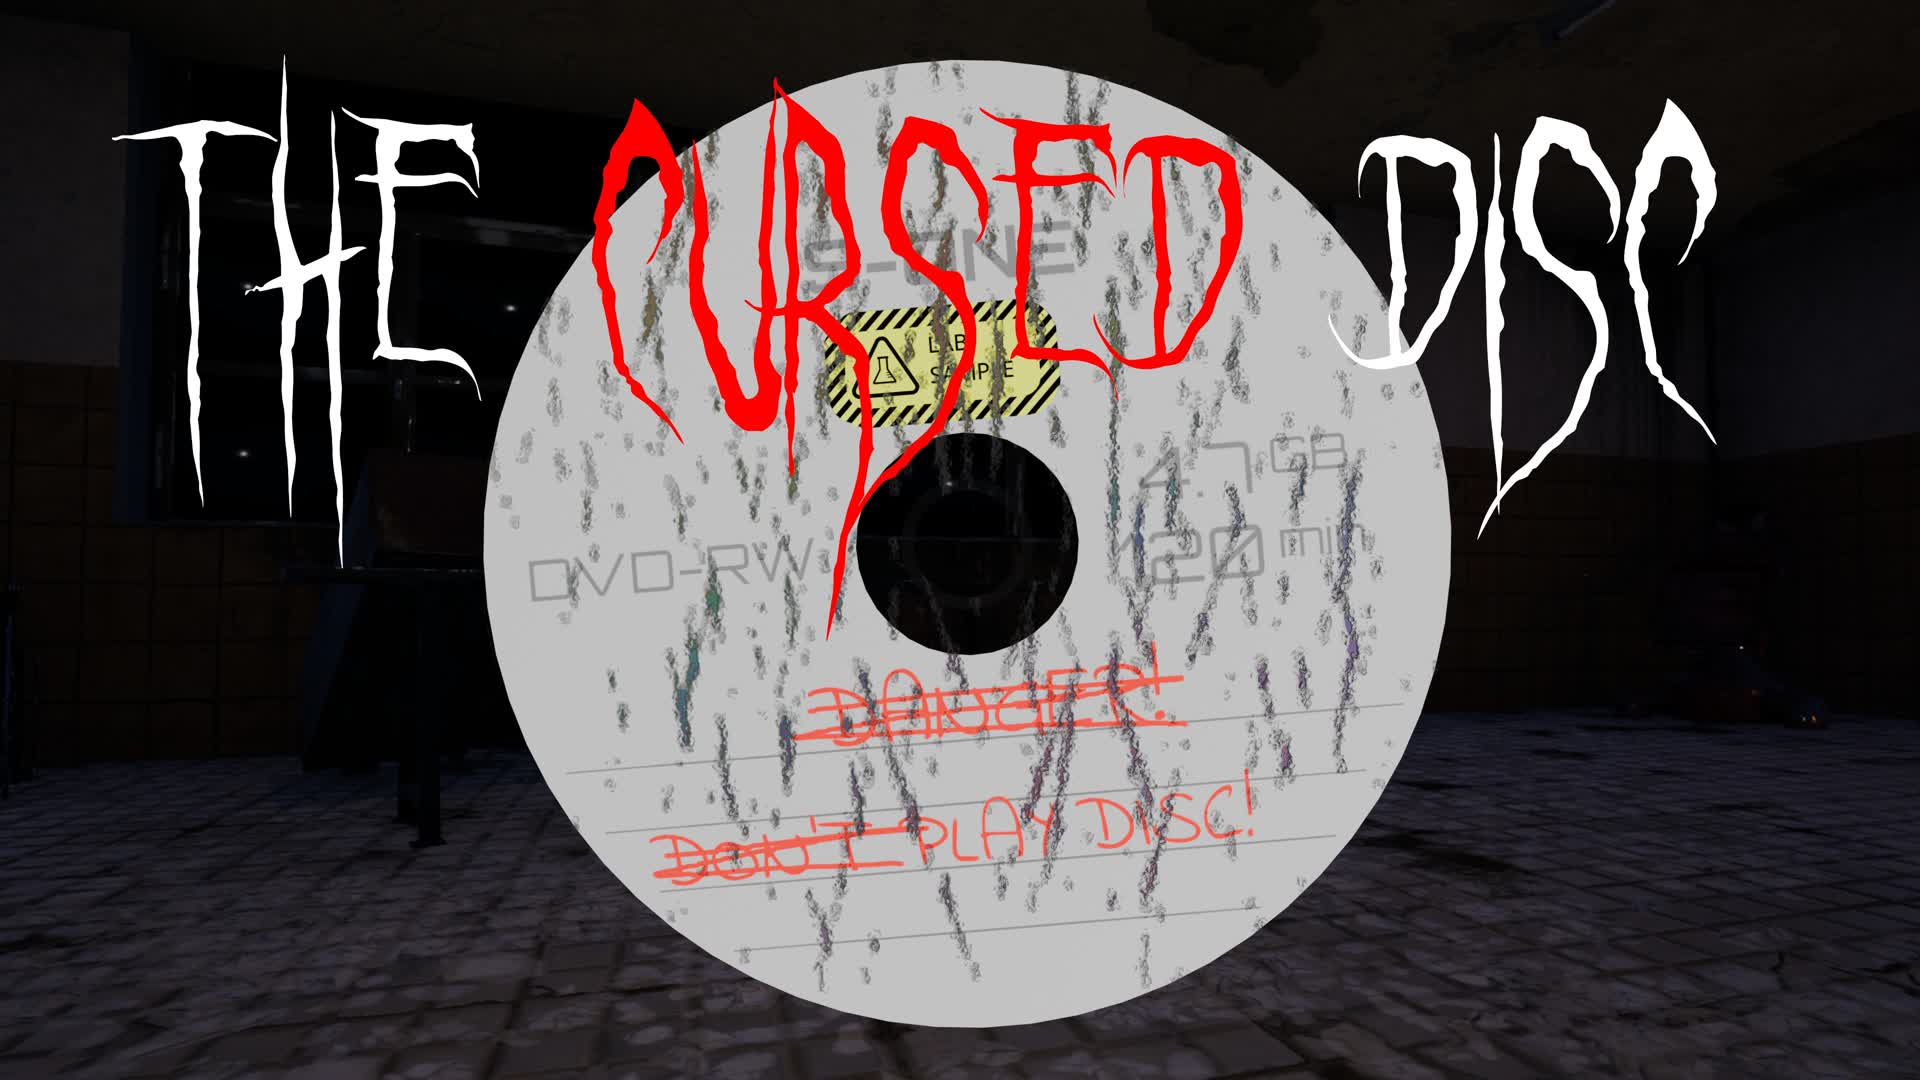 【注目の島】The Cursed Disc